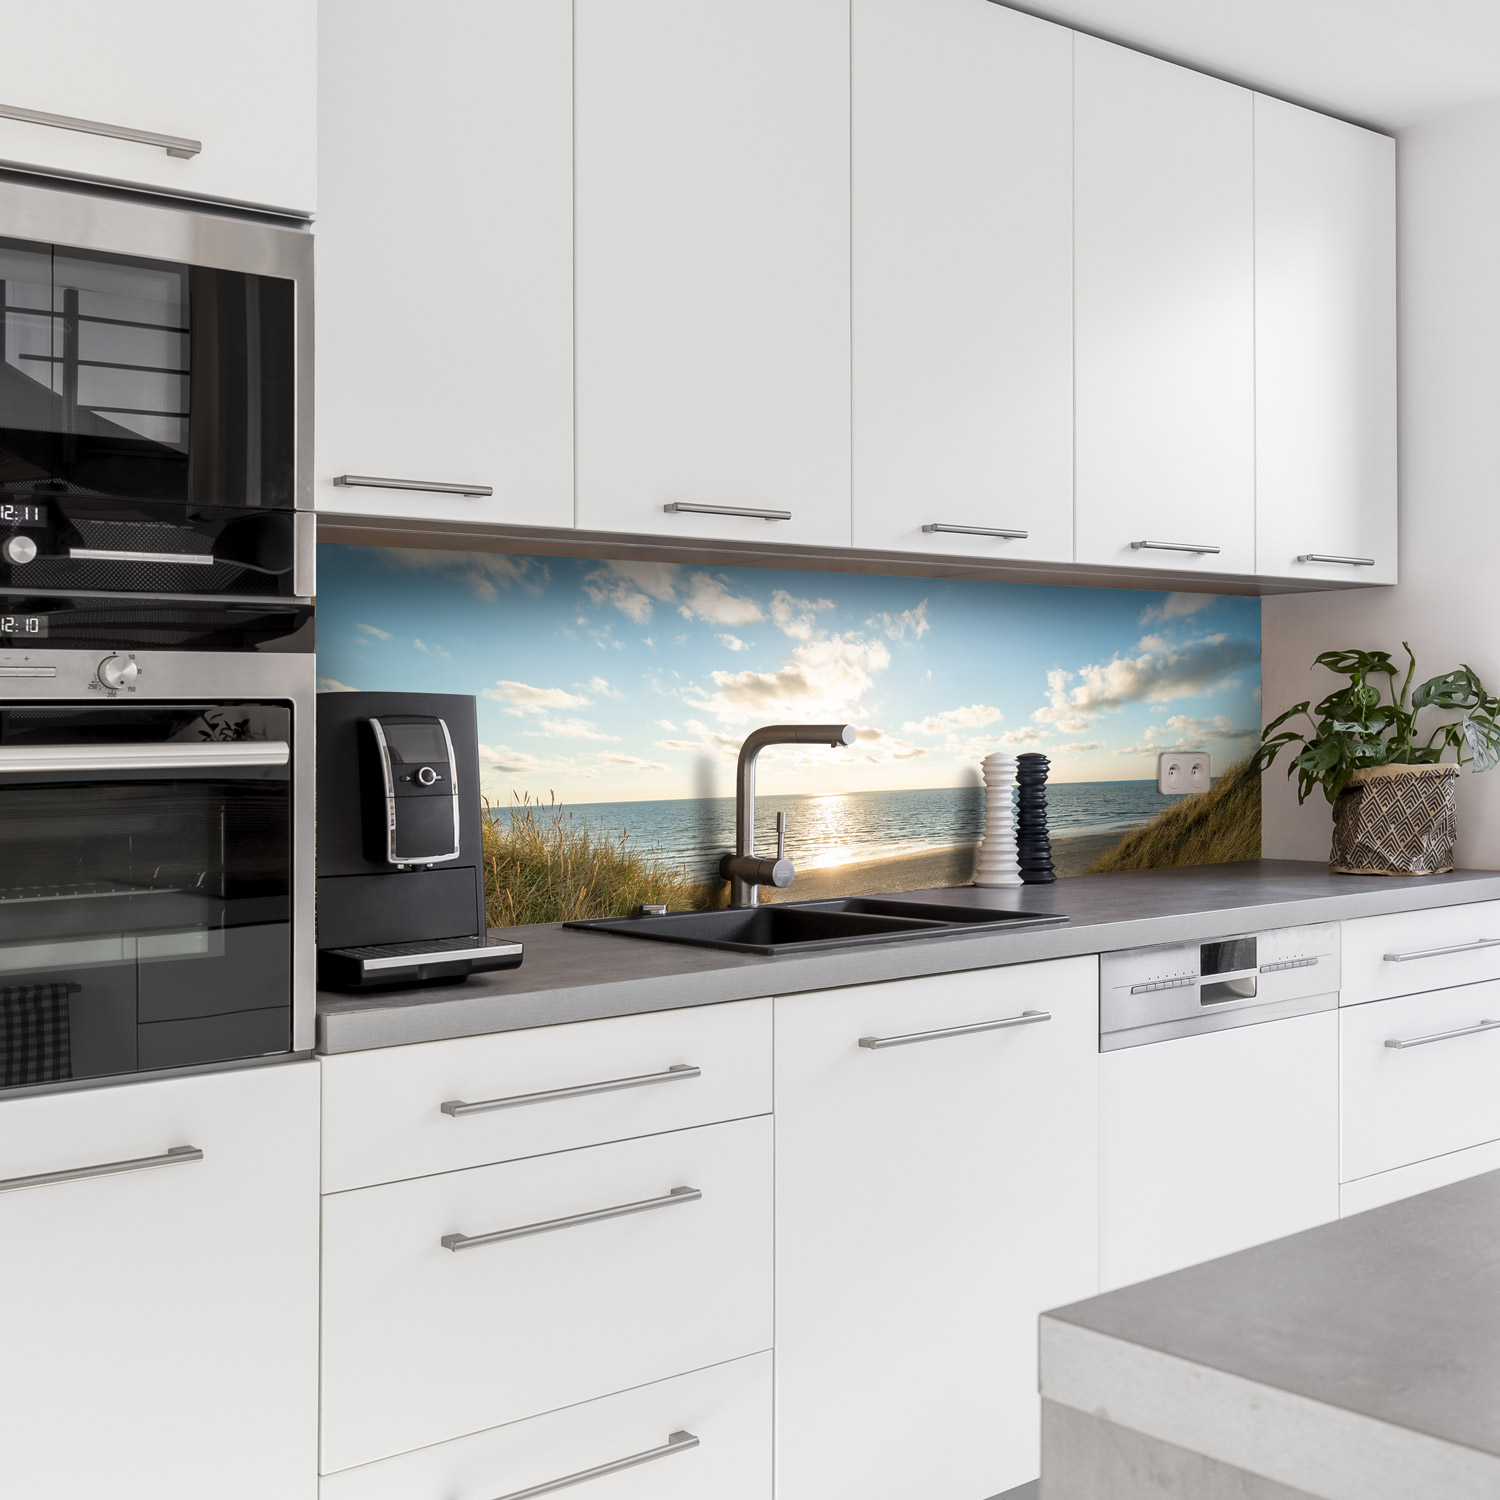 Küchenrückwand mit Dünengras V2 Motiv als Fliesenersatz und Spritzschutz